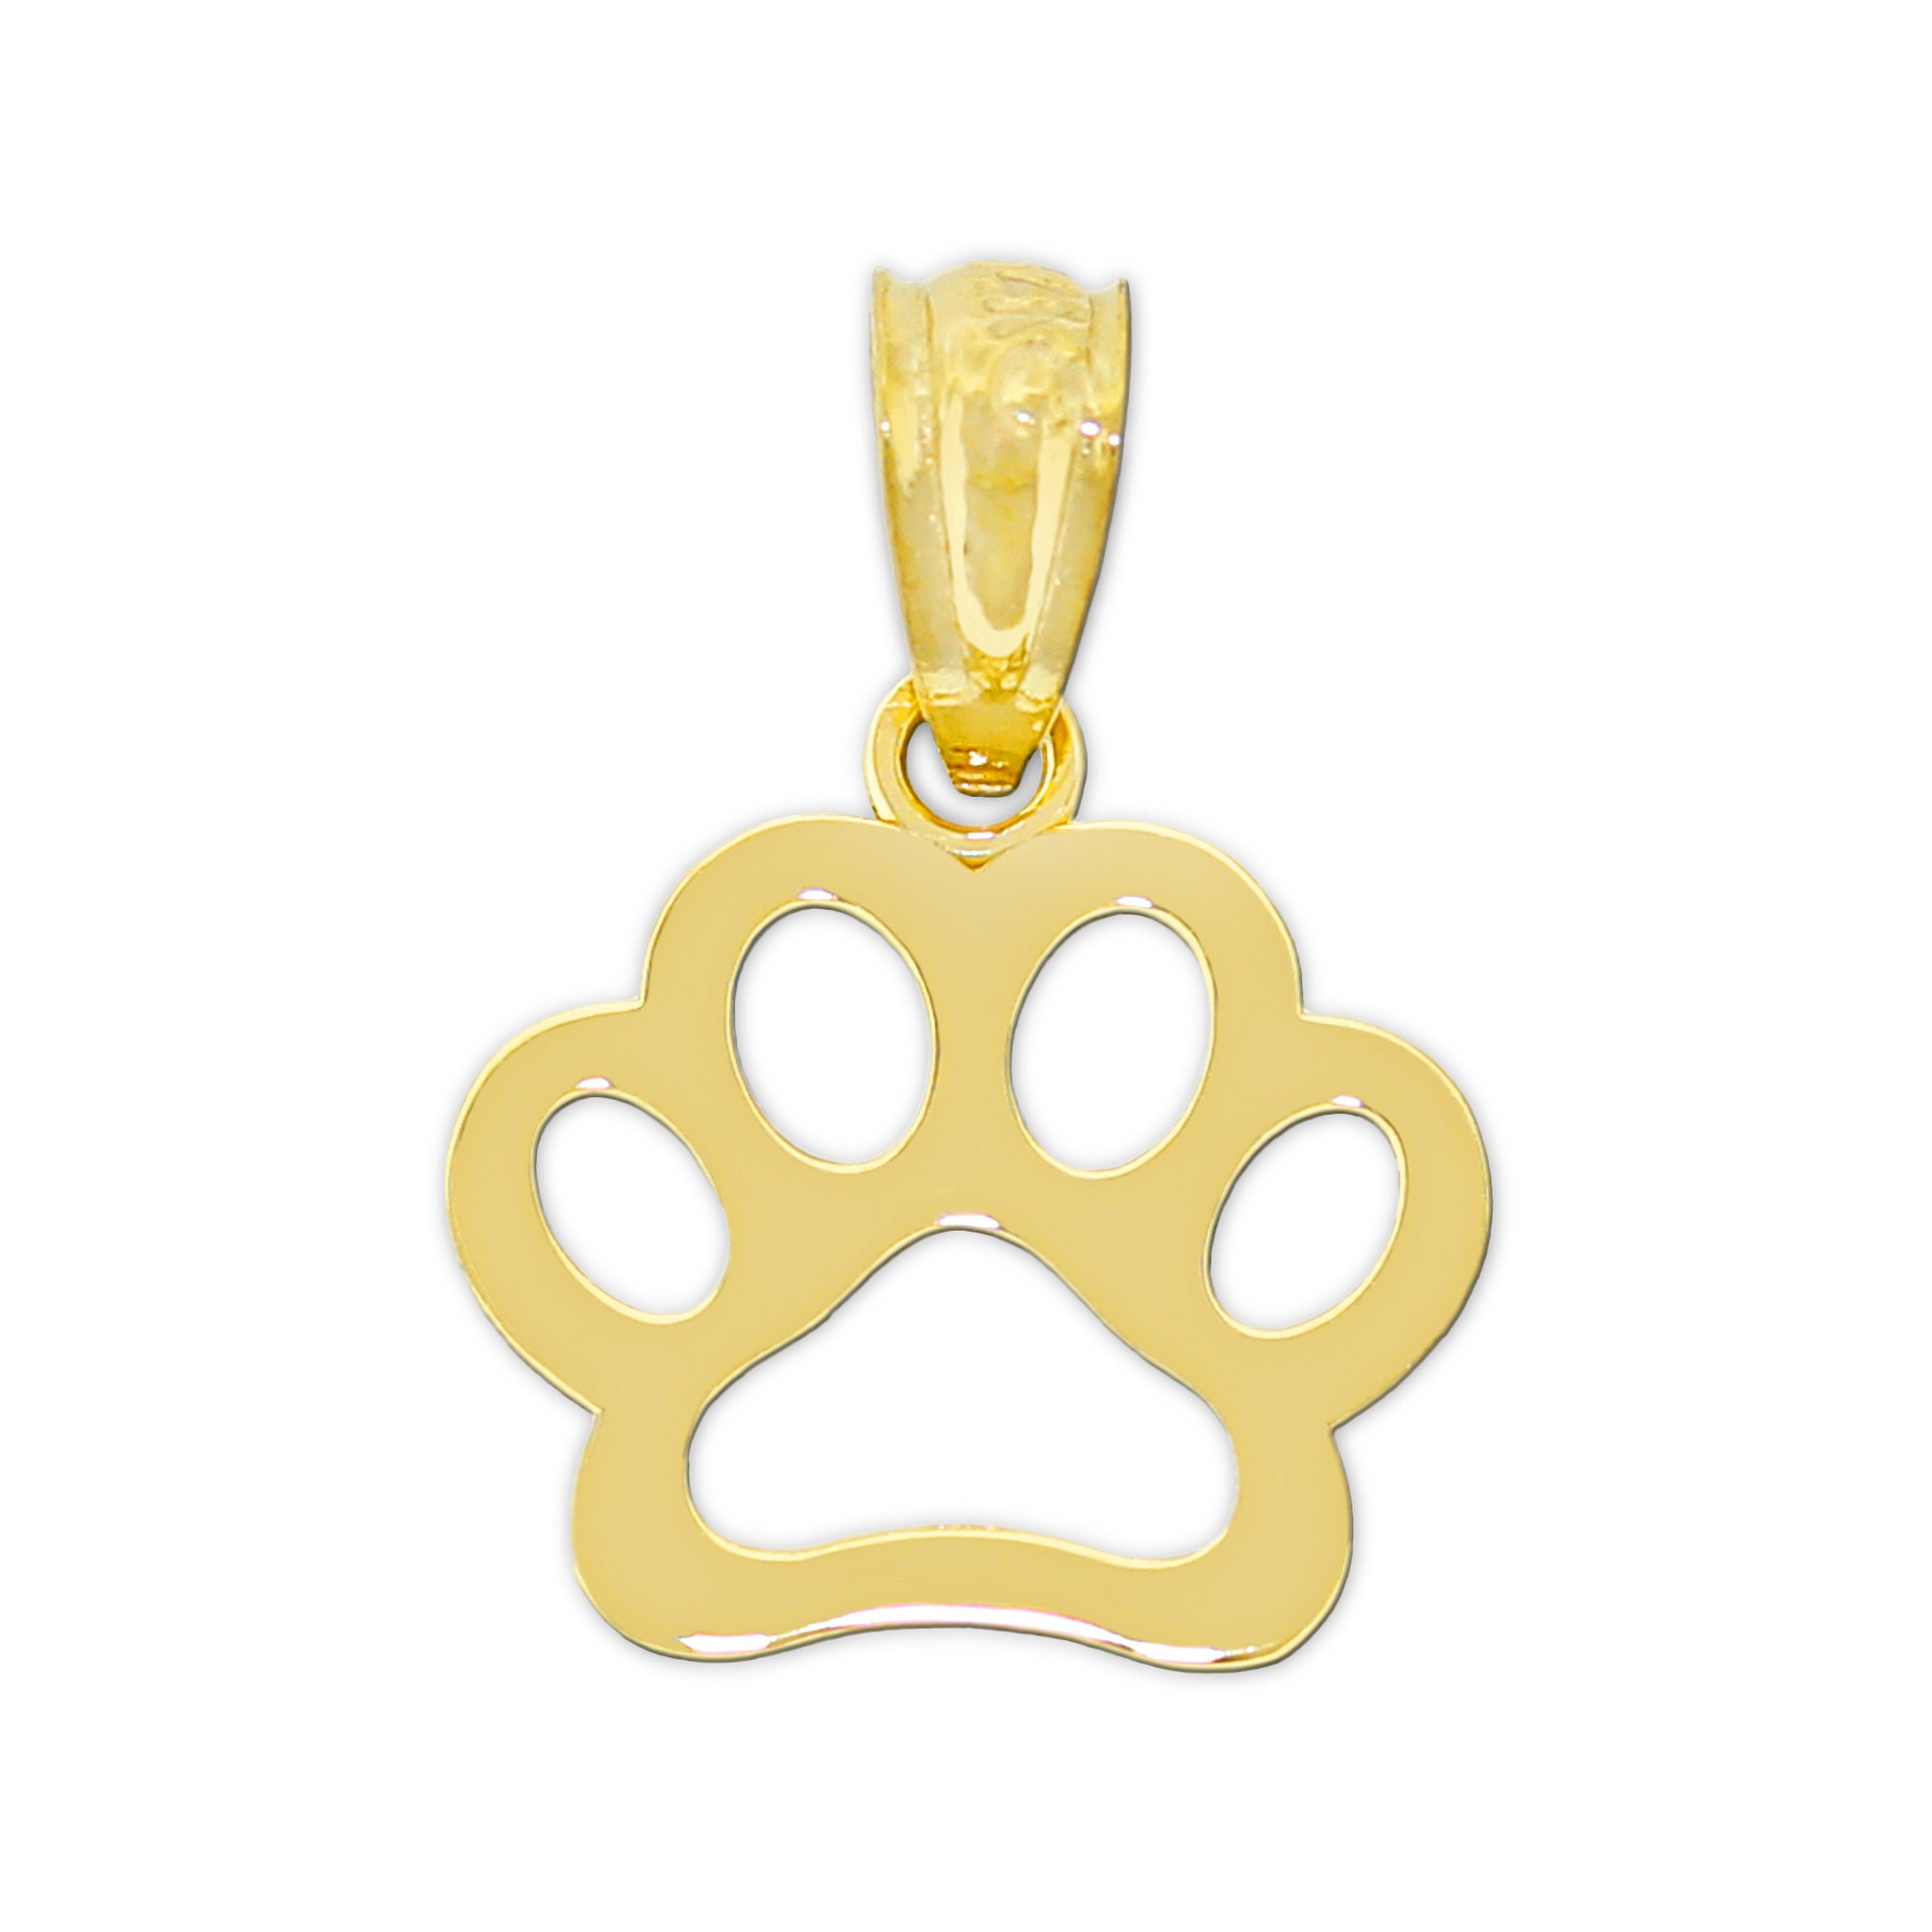 Gold Hundepfoten Anhänger Hundepfoten Halskette 10 Karat Gelbgold mit  optionalen Goldketten